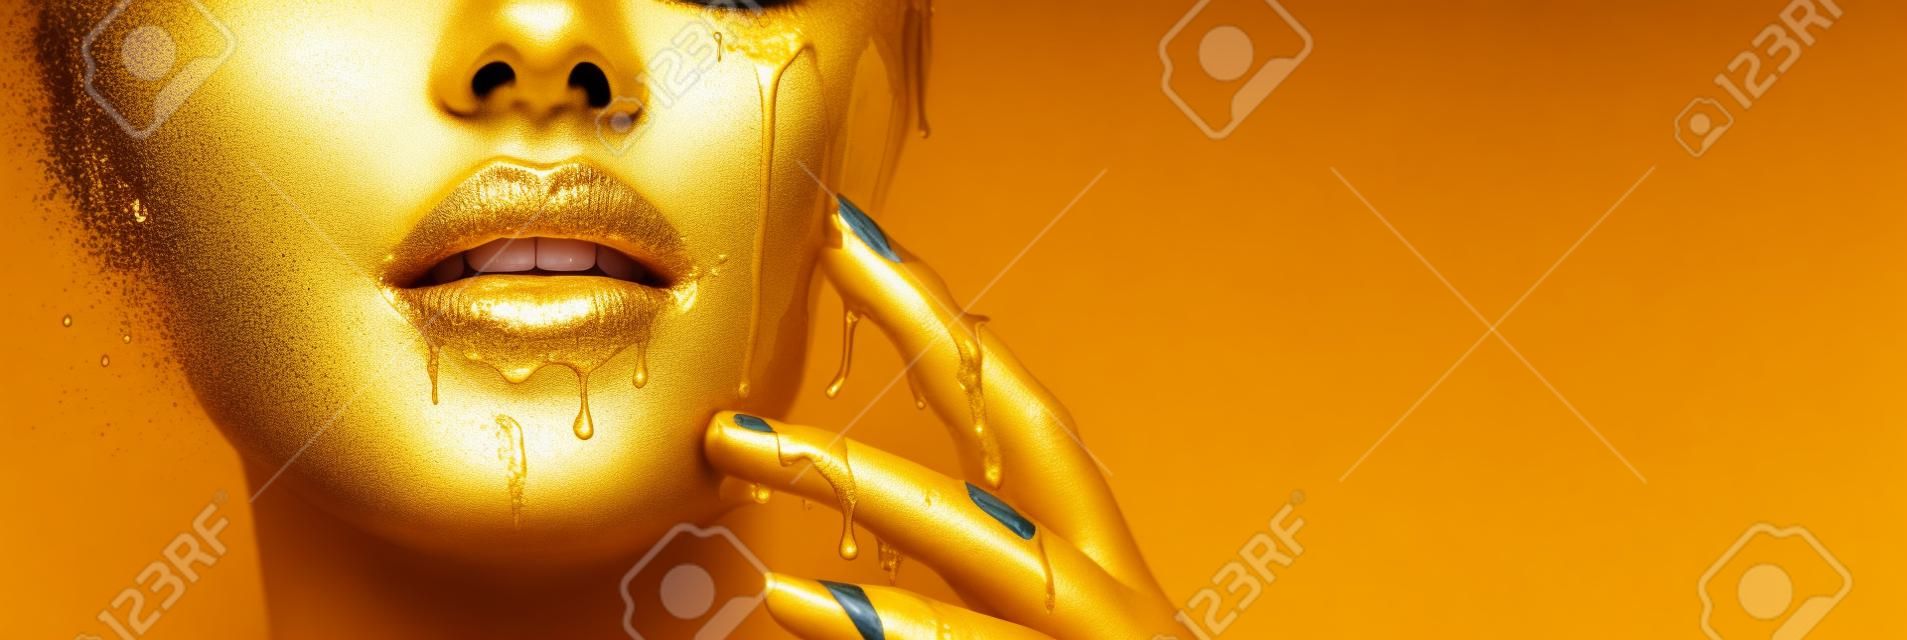 Des taches de peinture dorée s'égouttent des lèvres du visage et de la main, des gouttes de liquide doré sur la bouche de la belle fille modèle, un maquillage abstrait créatif. Visage de femme de beauté